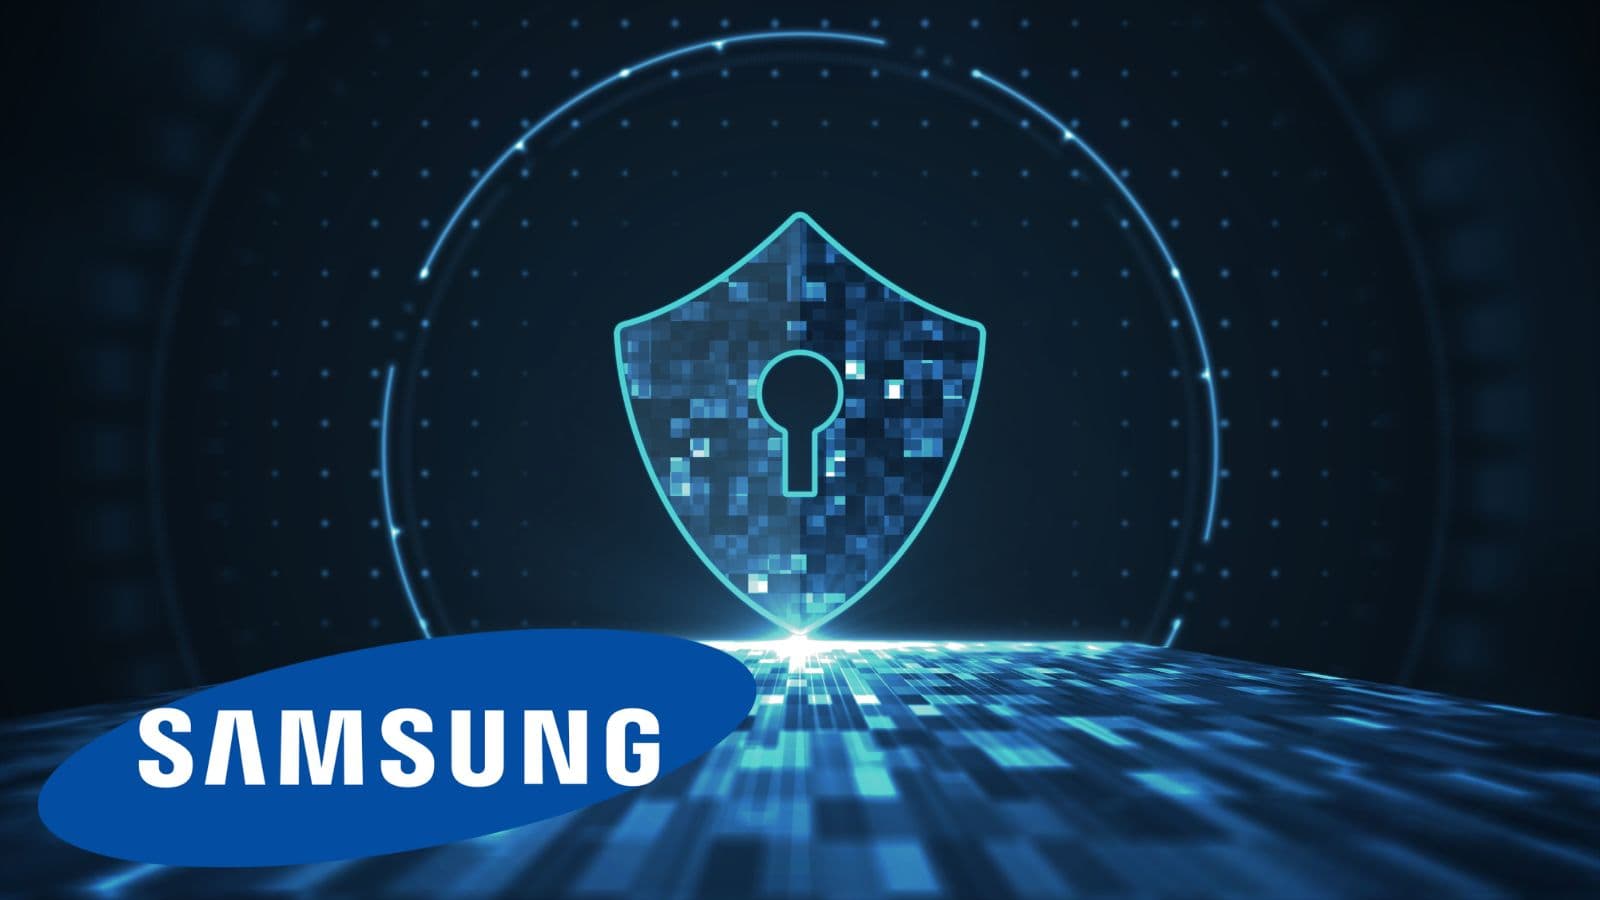 Samsung Galaxy: nuove funzionalità per proteggere la privacy